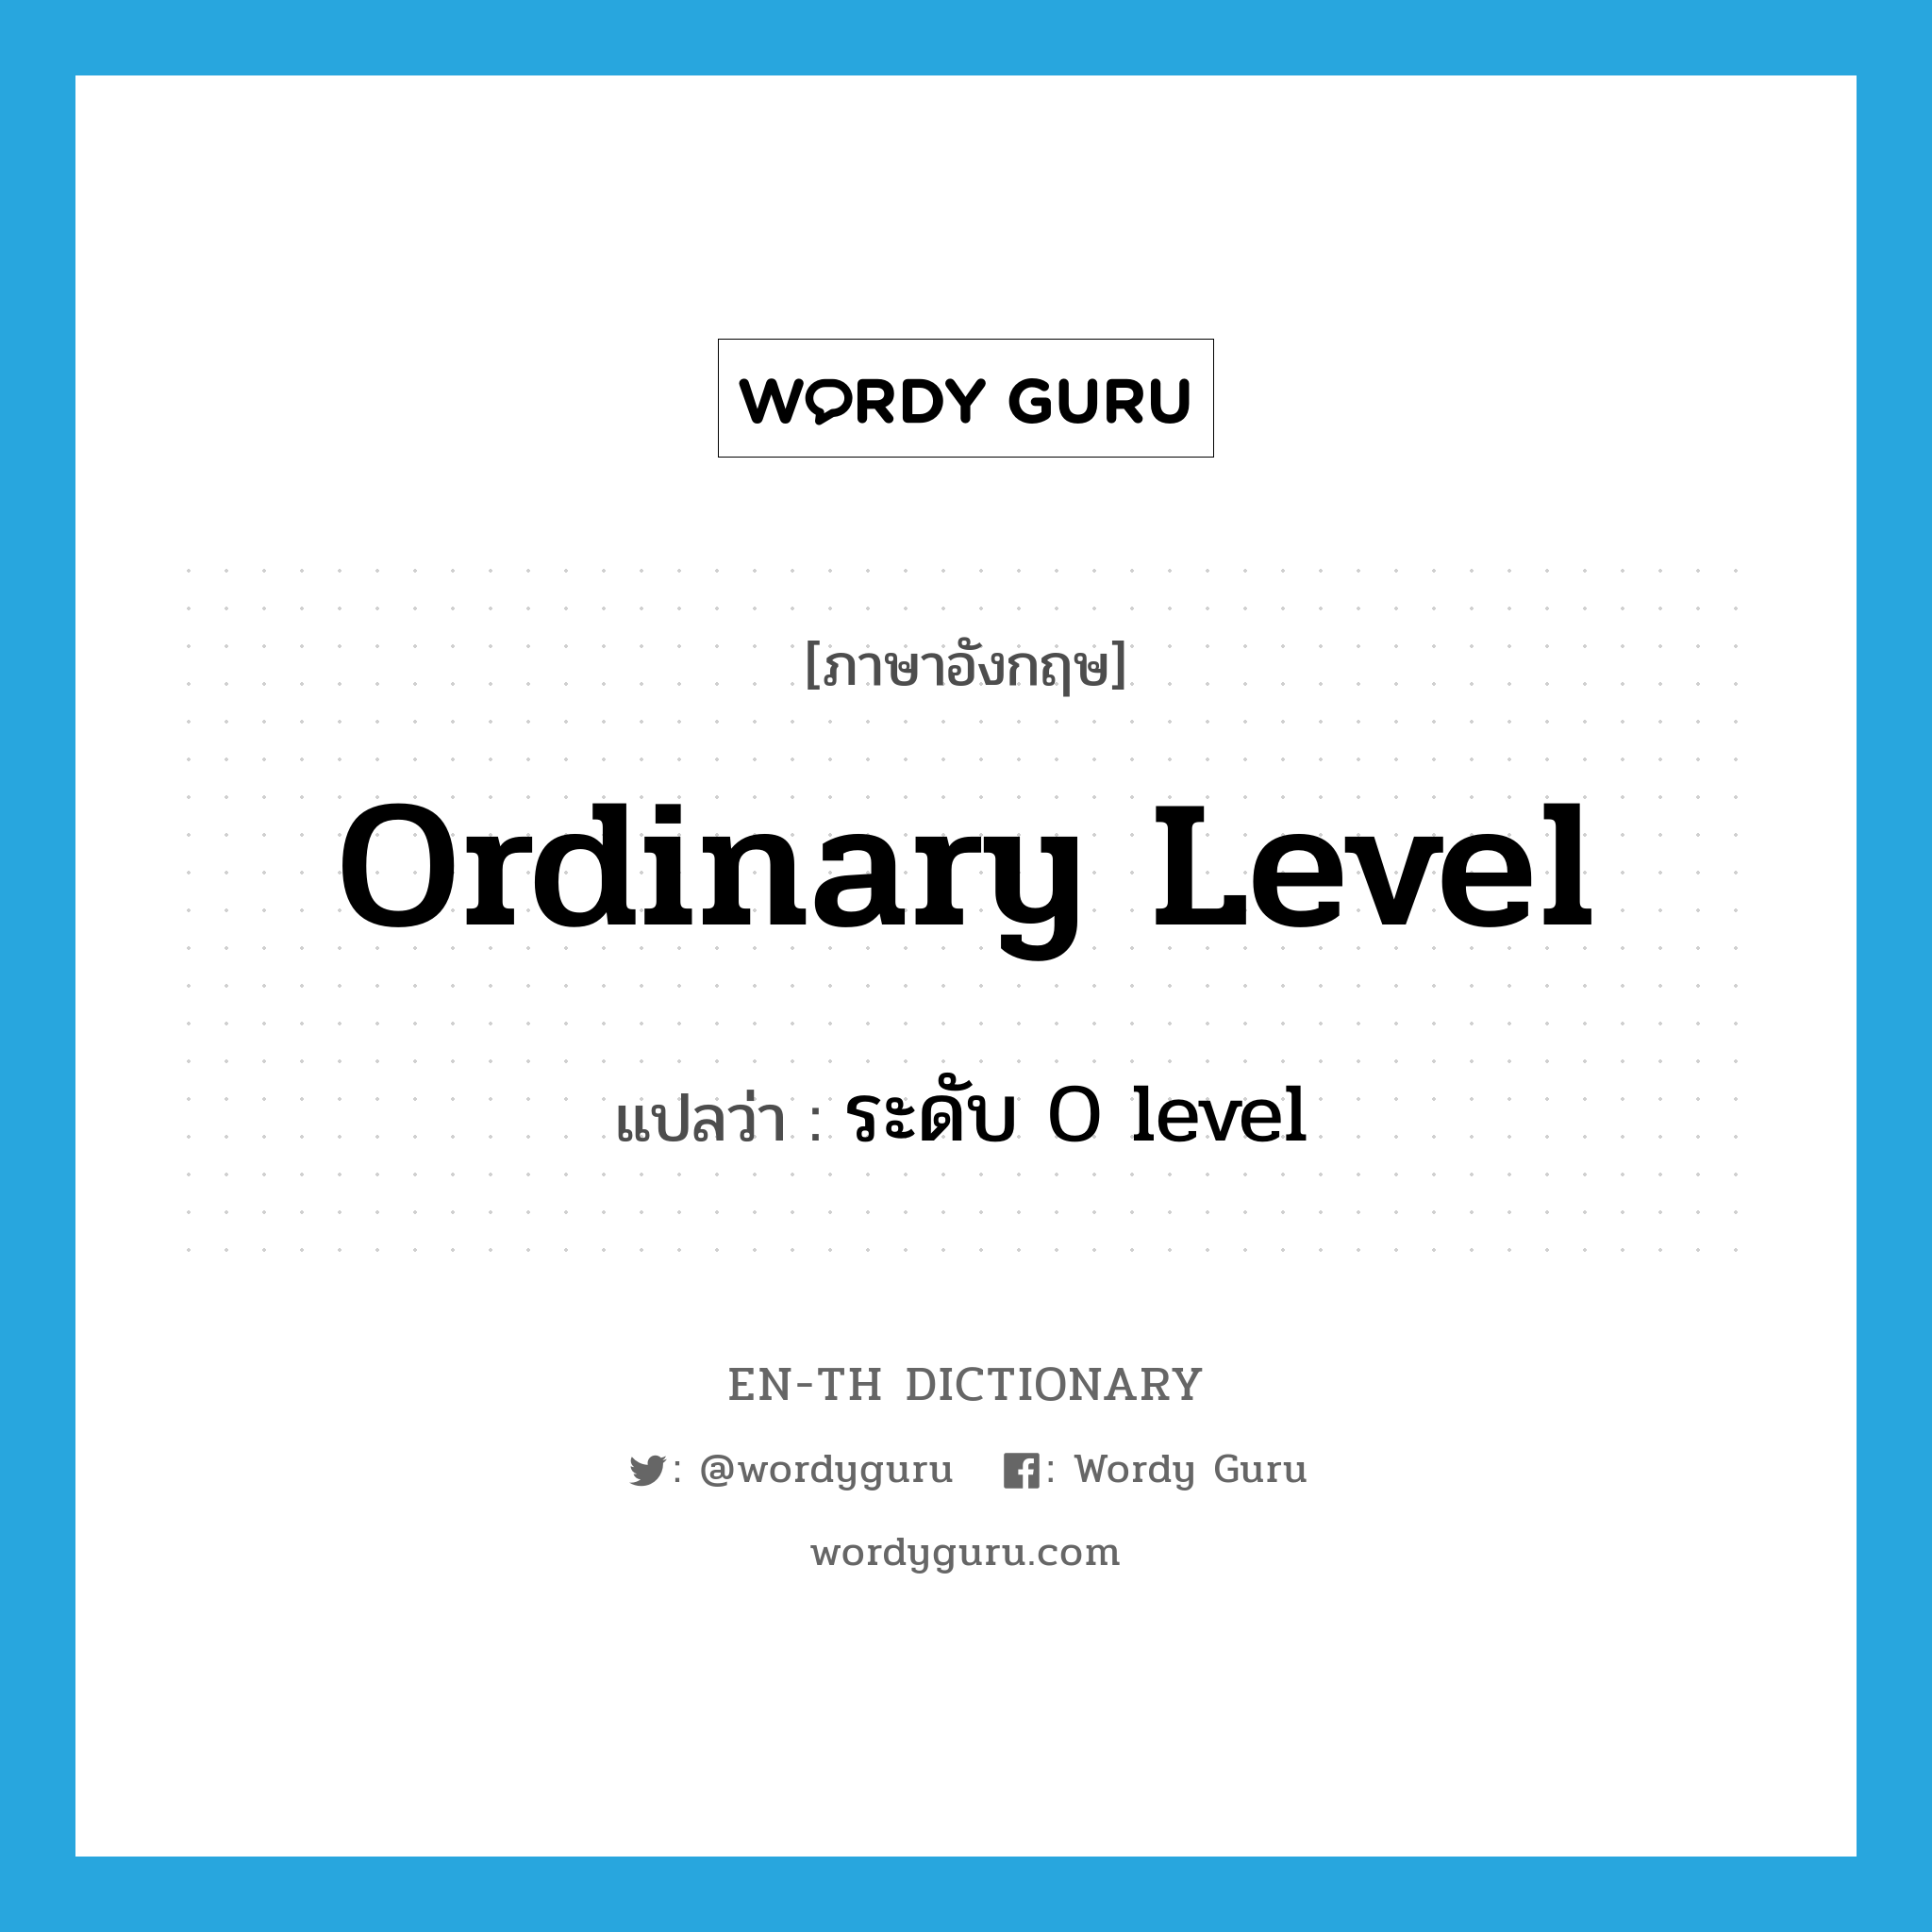 ระดับ O level ภาษาอังกฤษ?, คำศัพท์ภาษาอังกฤษ ระดับ O level แปลว่า ordinary level ประเภท N หมวด N